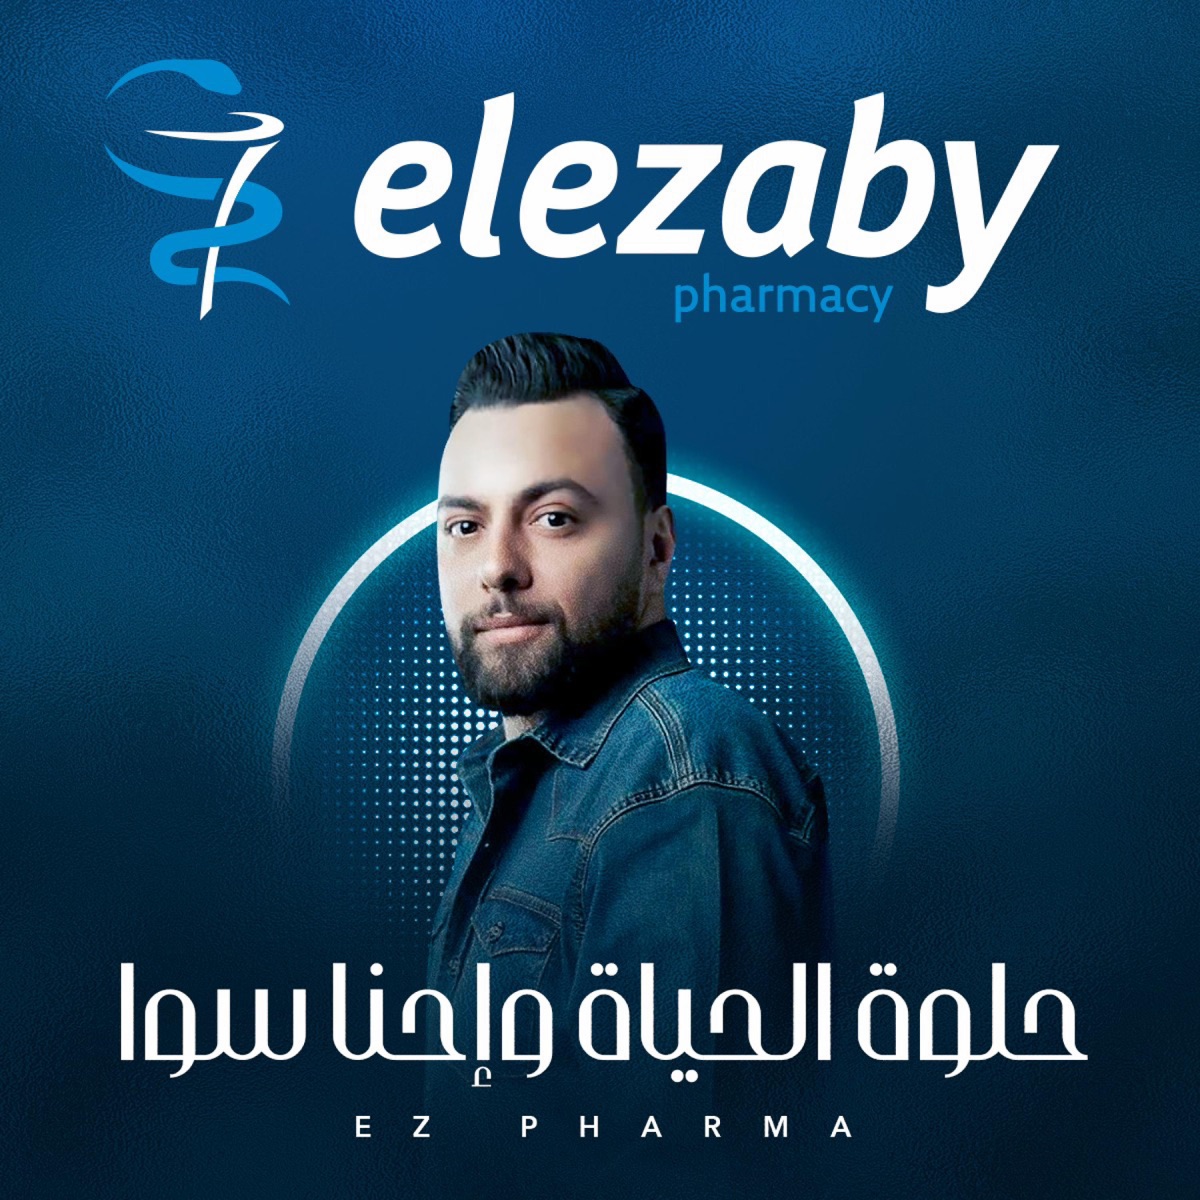 حلوه الحياه واحنا سوا (مدين) [Radio Edit] - Single - Album by صيدليات  العزبي - Apple Music